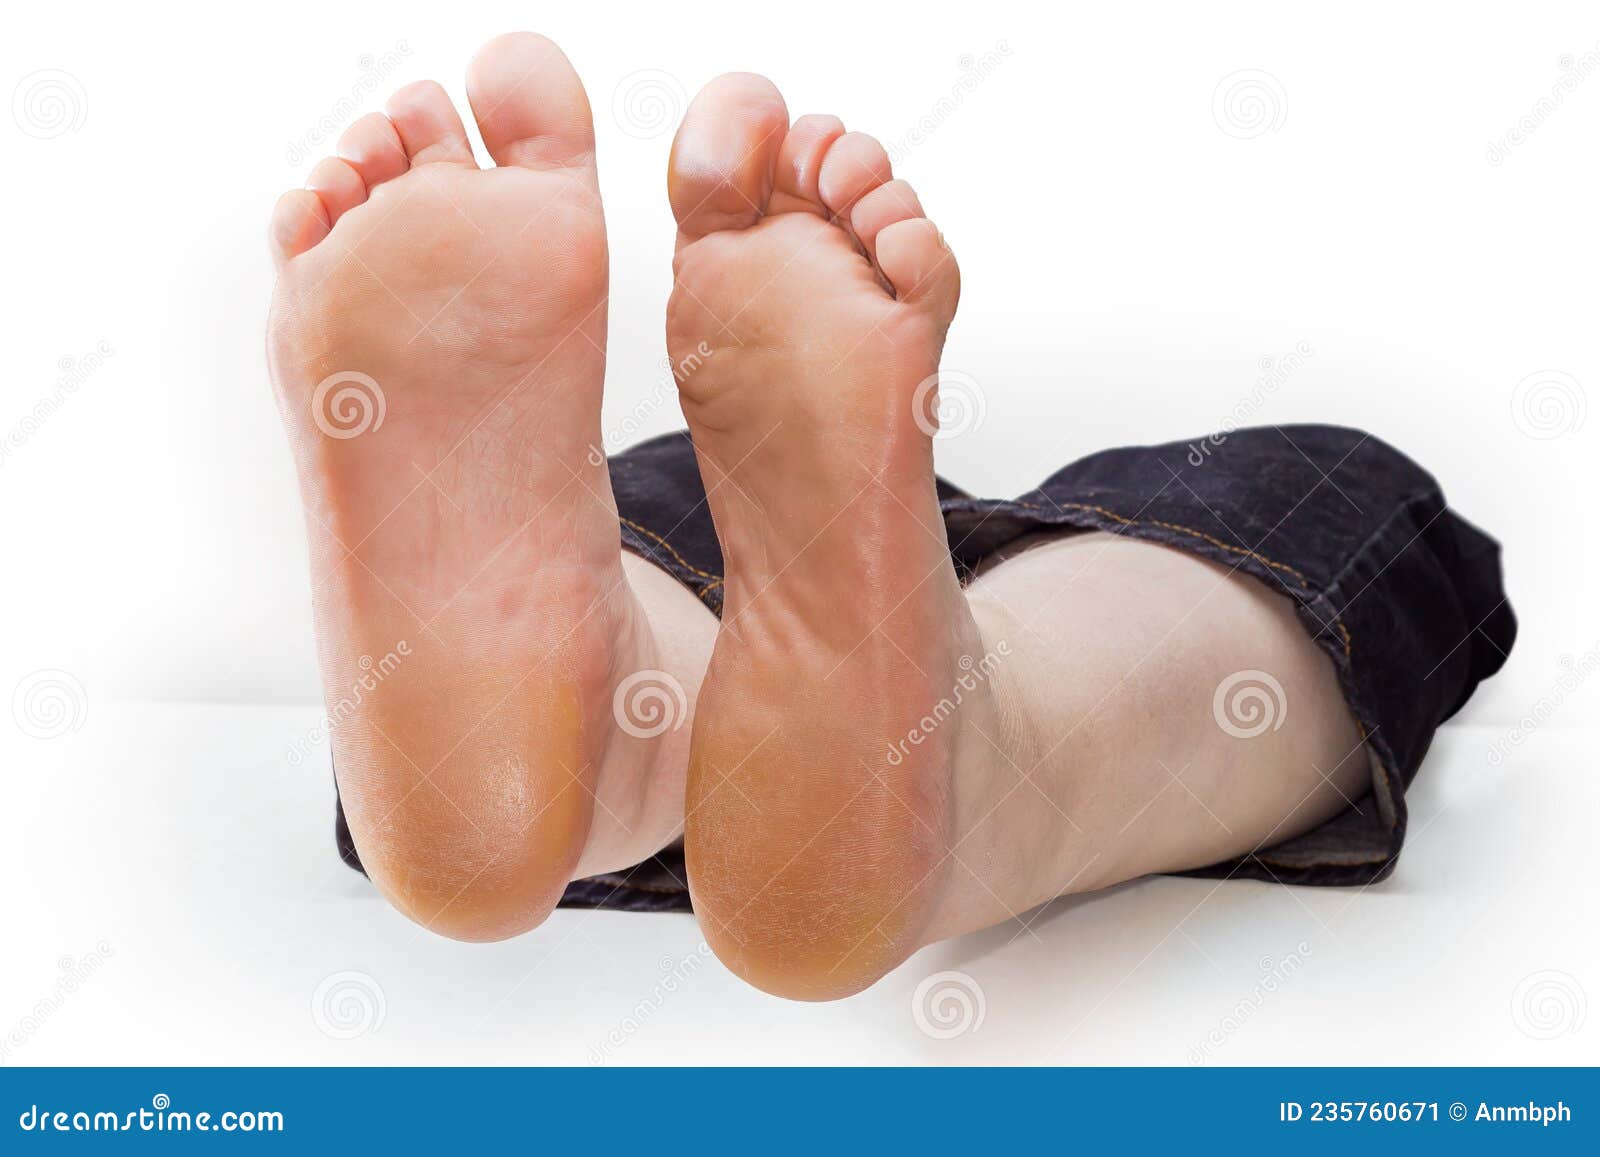 Girls feet soles